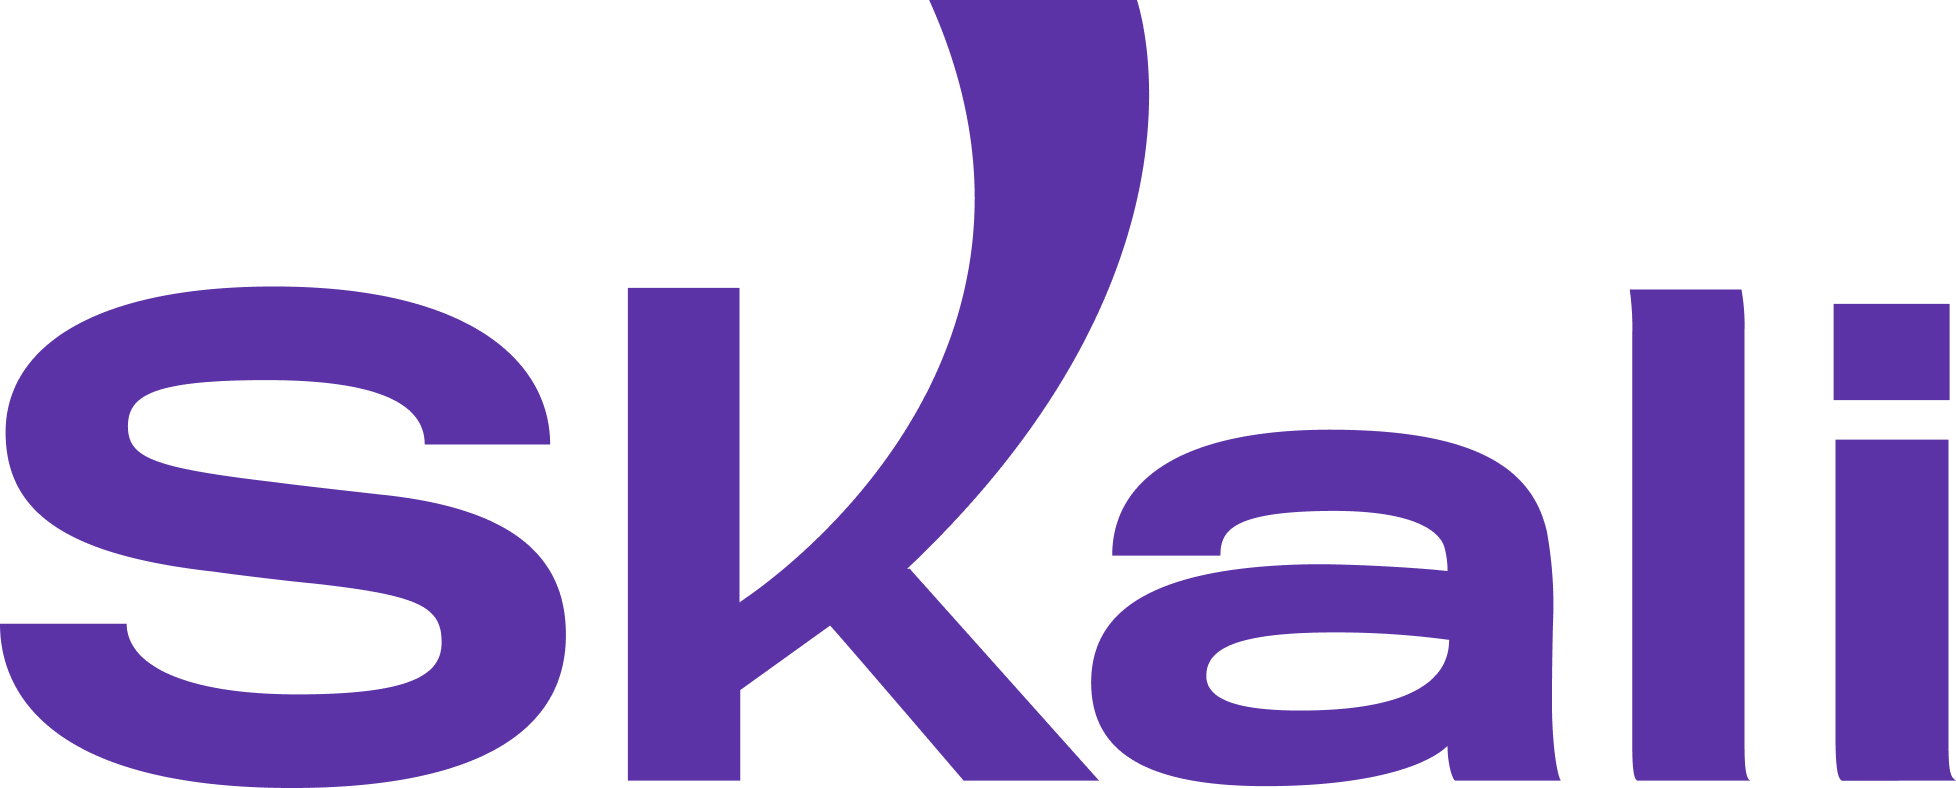 logo skali violet